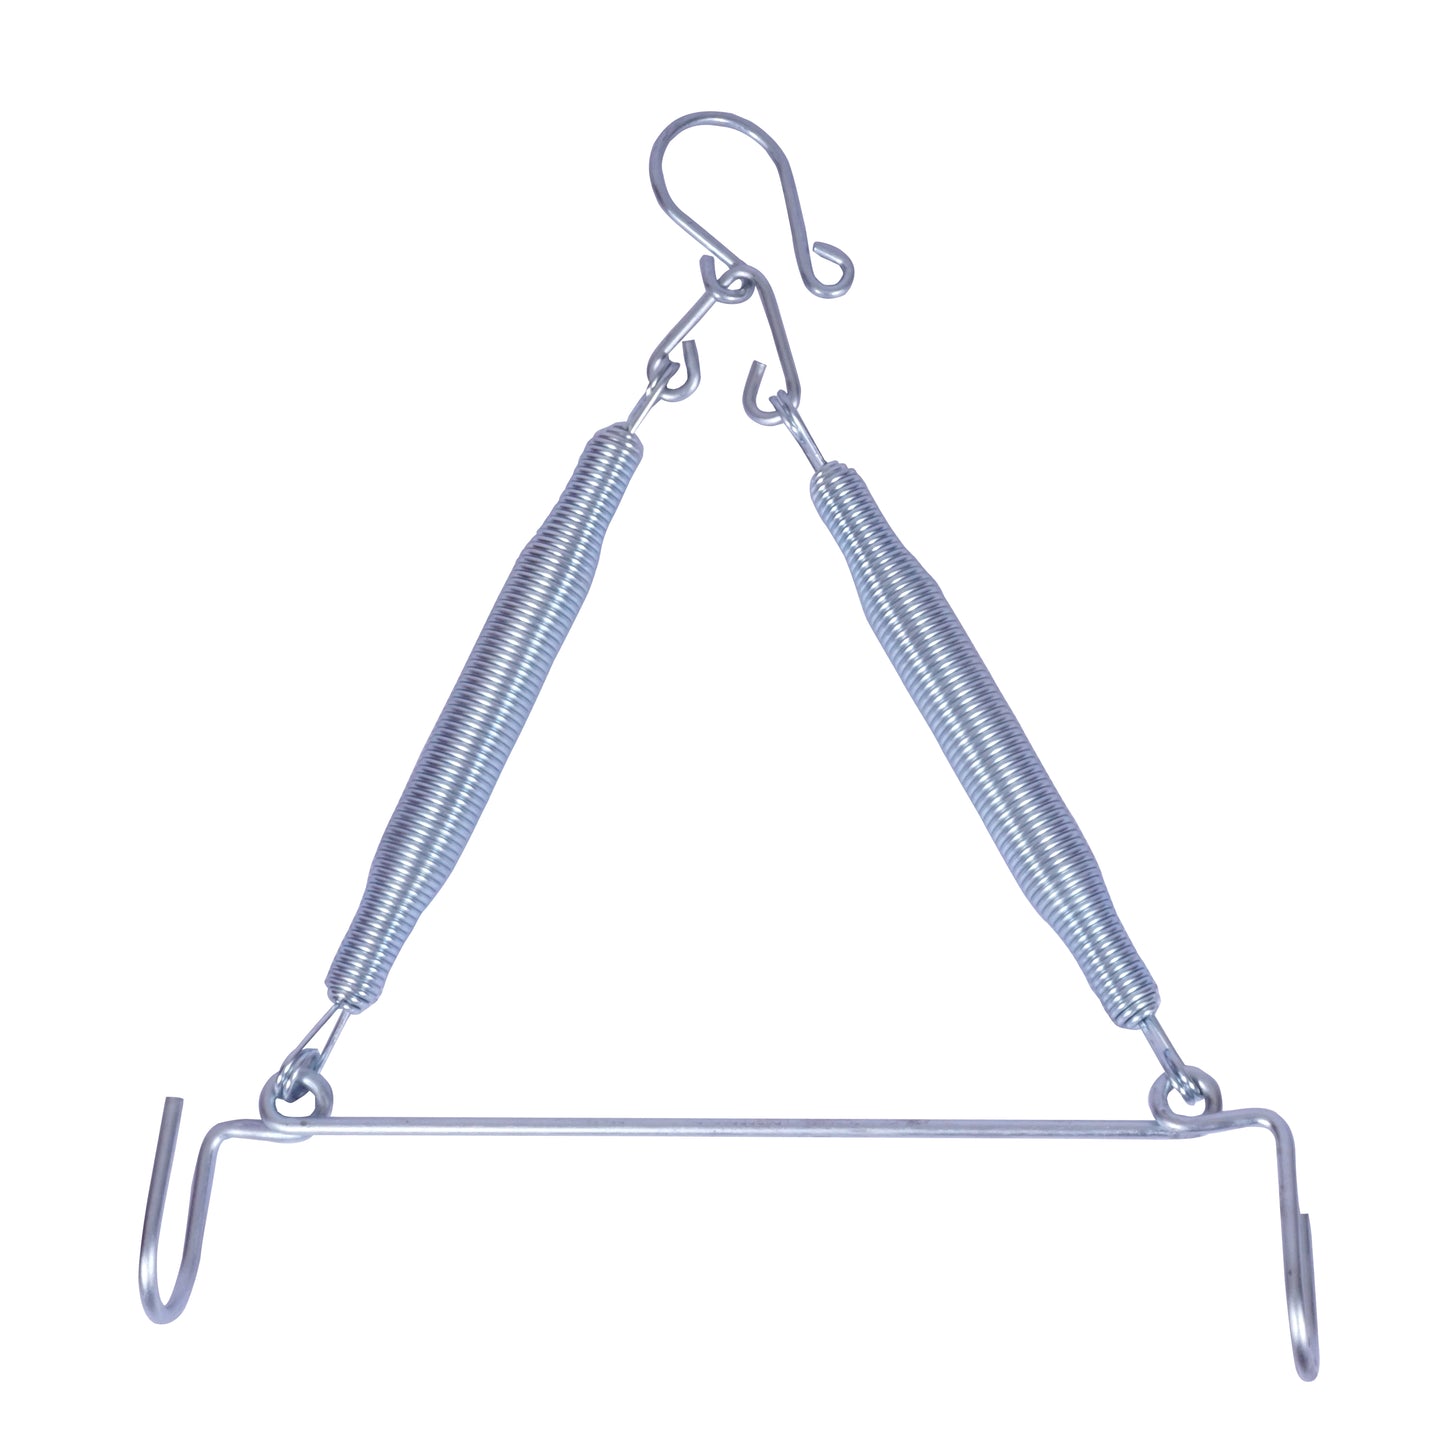 Triangular  Cradle spring